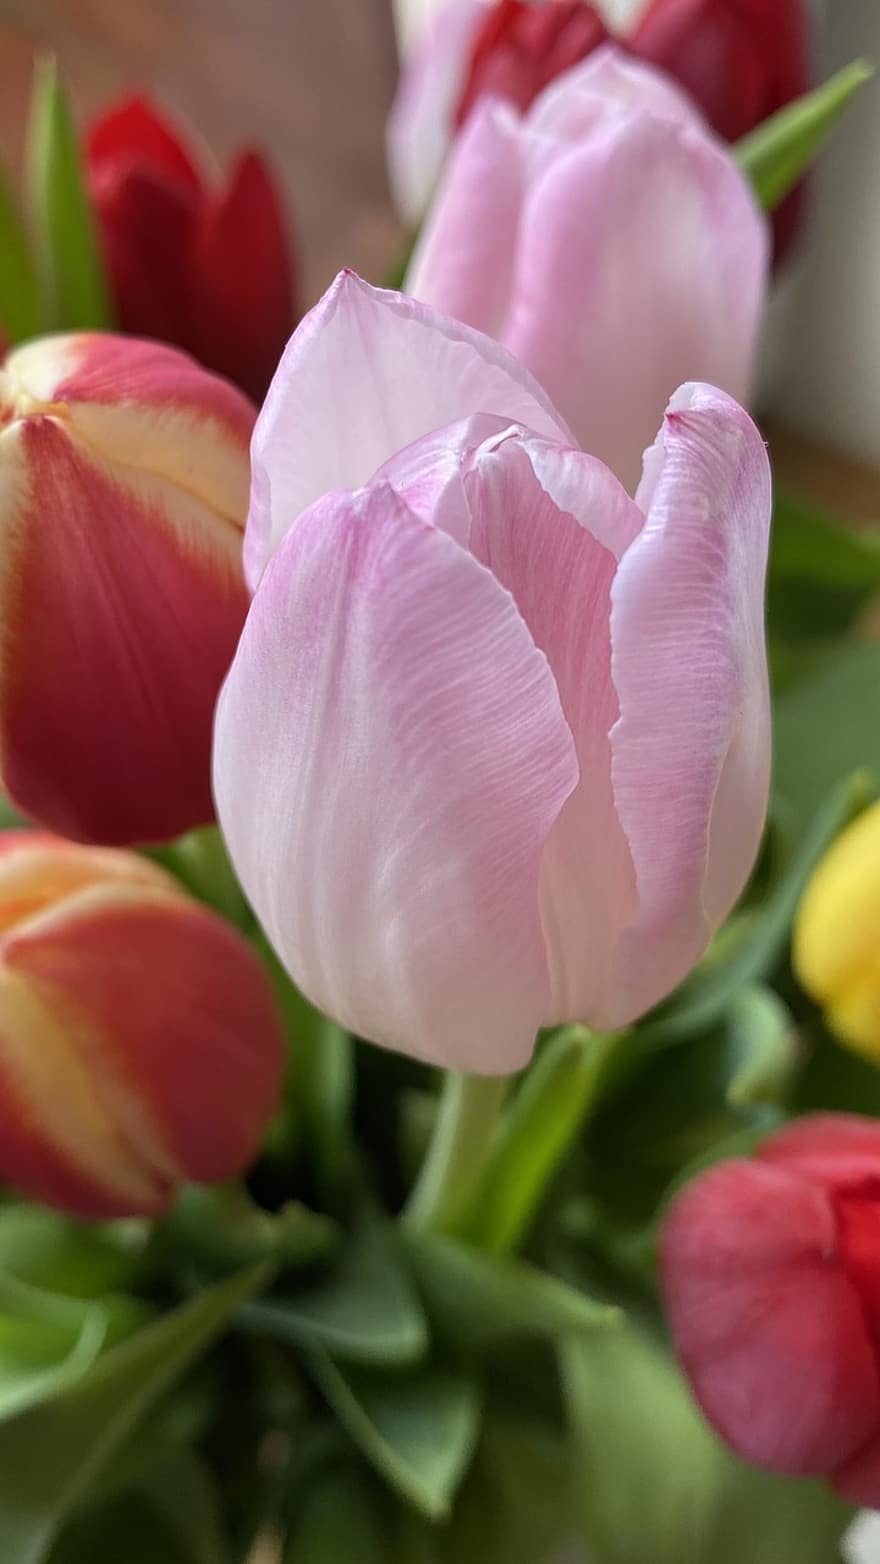 tulipan, kwiat, różowy kwiat, roślina, płatki, różowe płatki, kwitnąć, flora, ścieśniać, głowa kwiatu, płatek